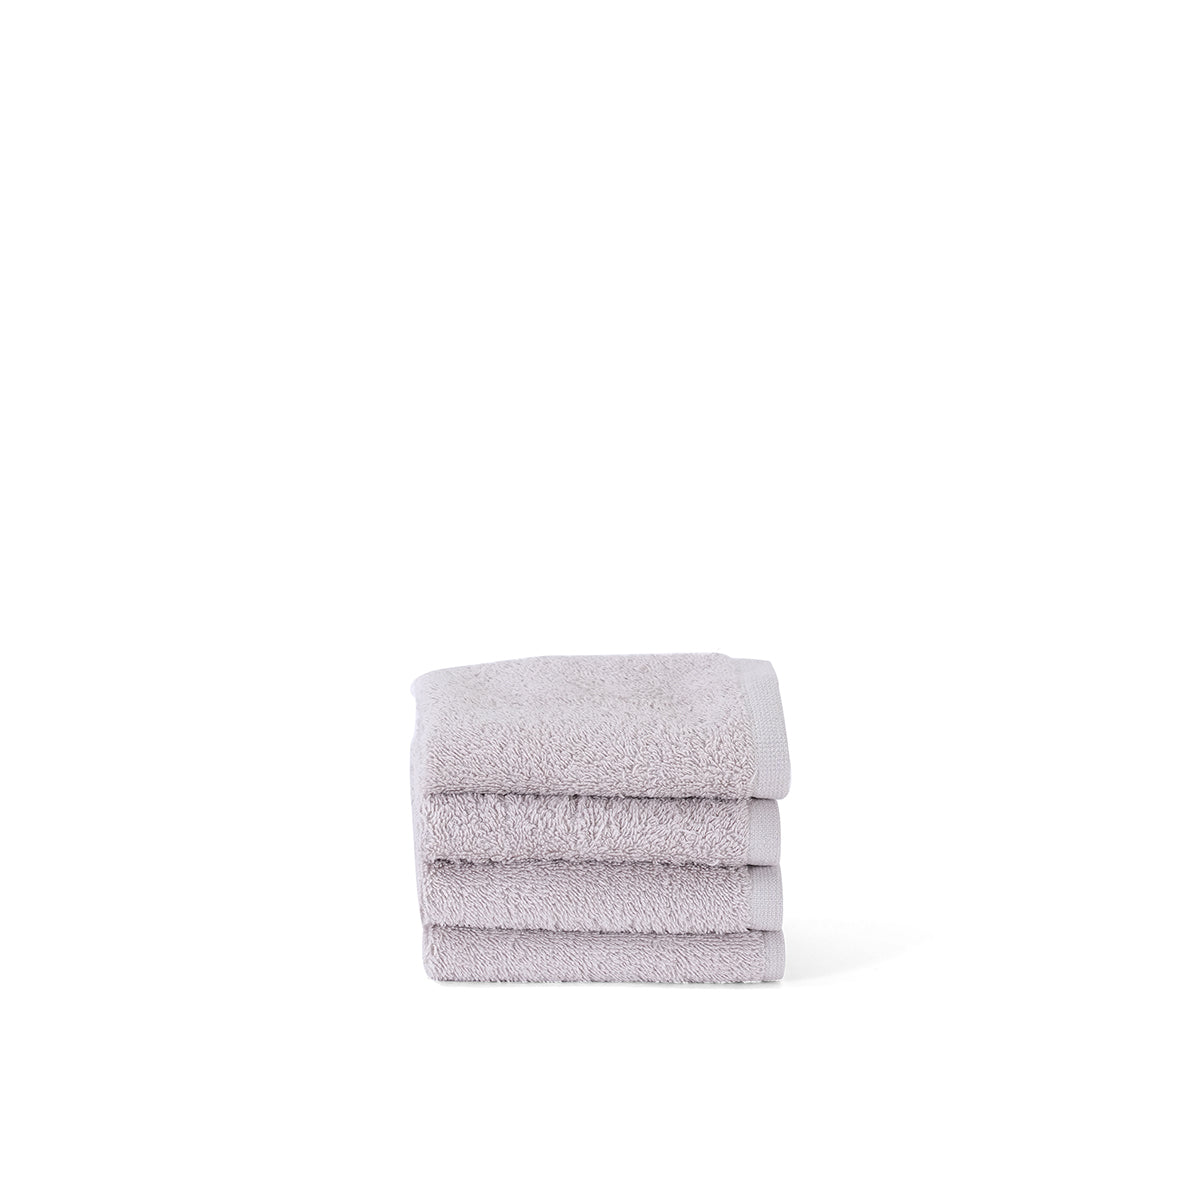 Utopian Regan Terrain 550 GSM Anti-Bacterial, Anti-Fungal And Odour Resistant Towel